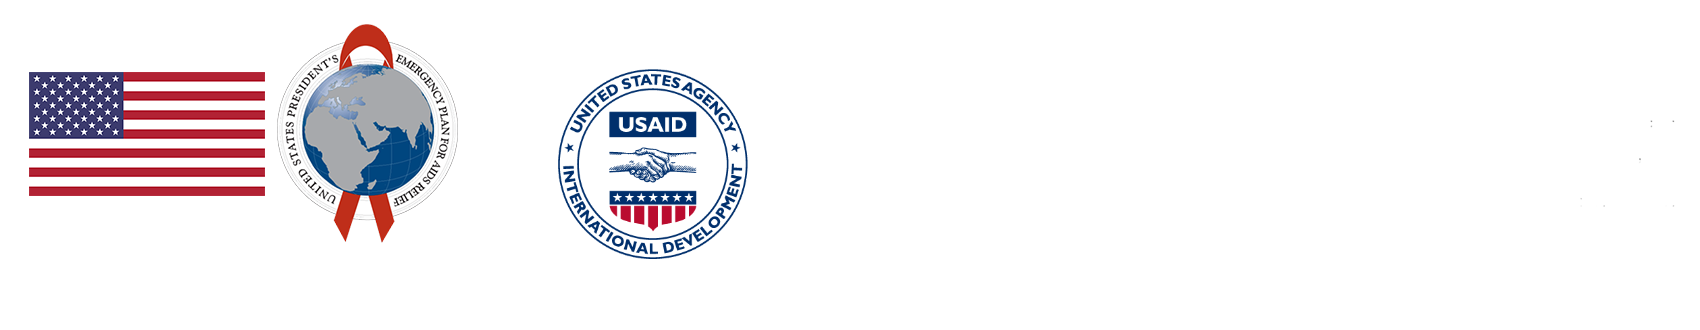 PEPFAR & USAID logos